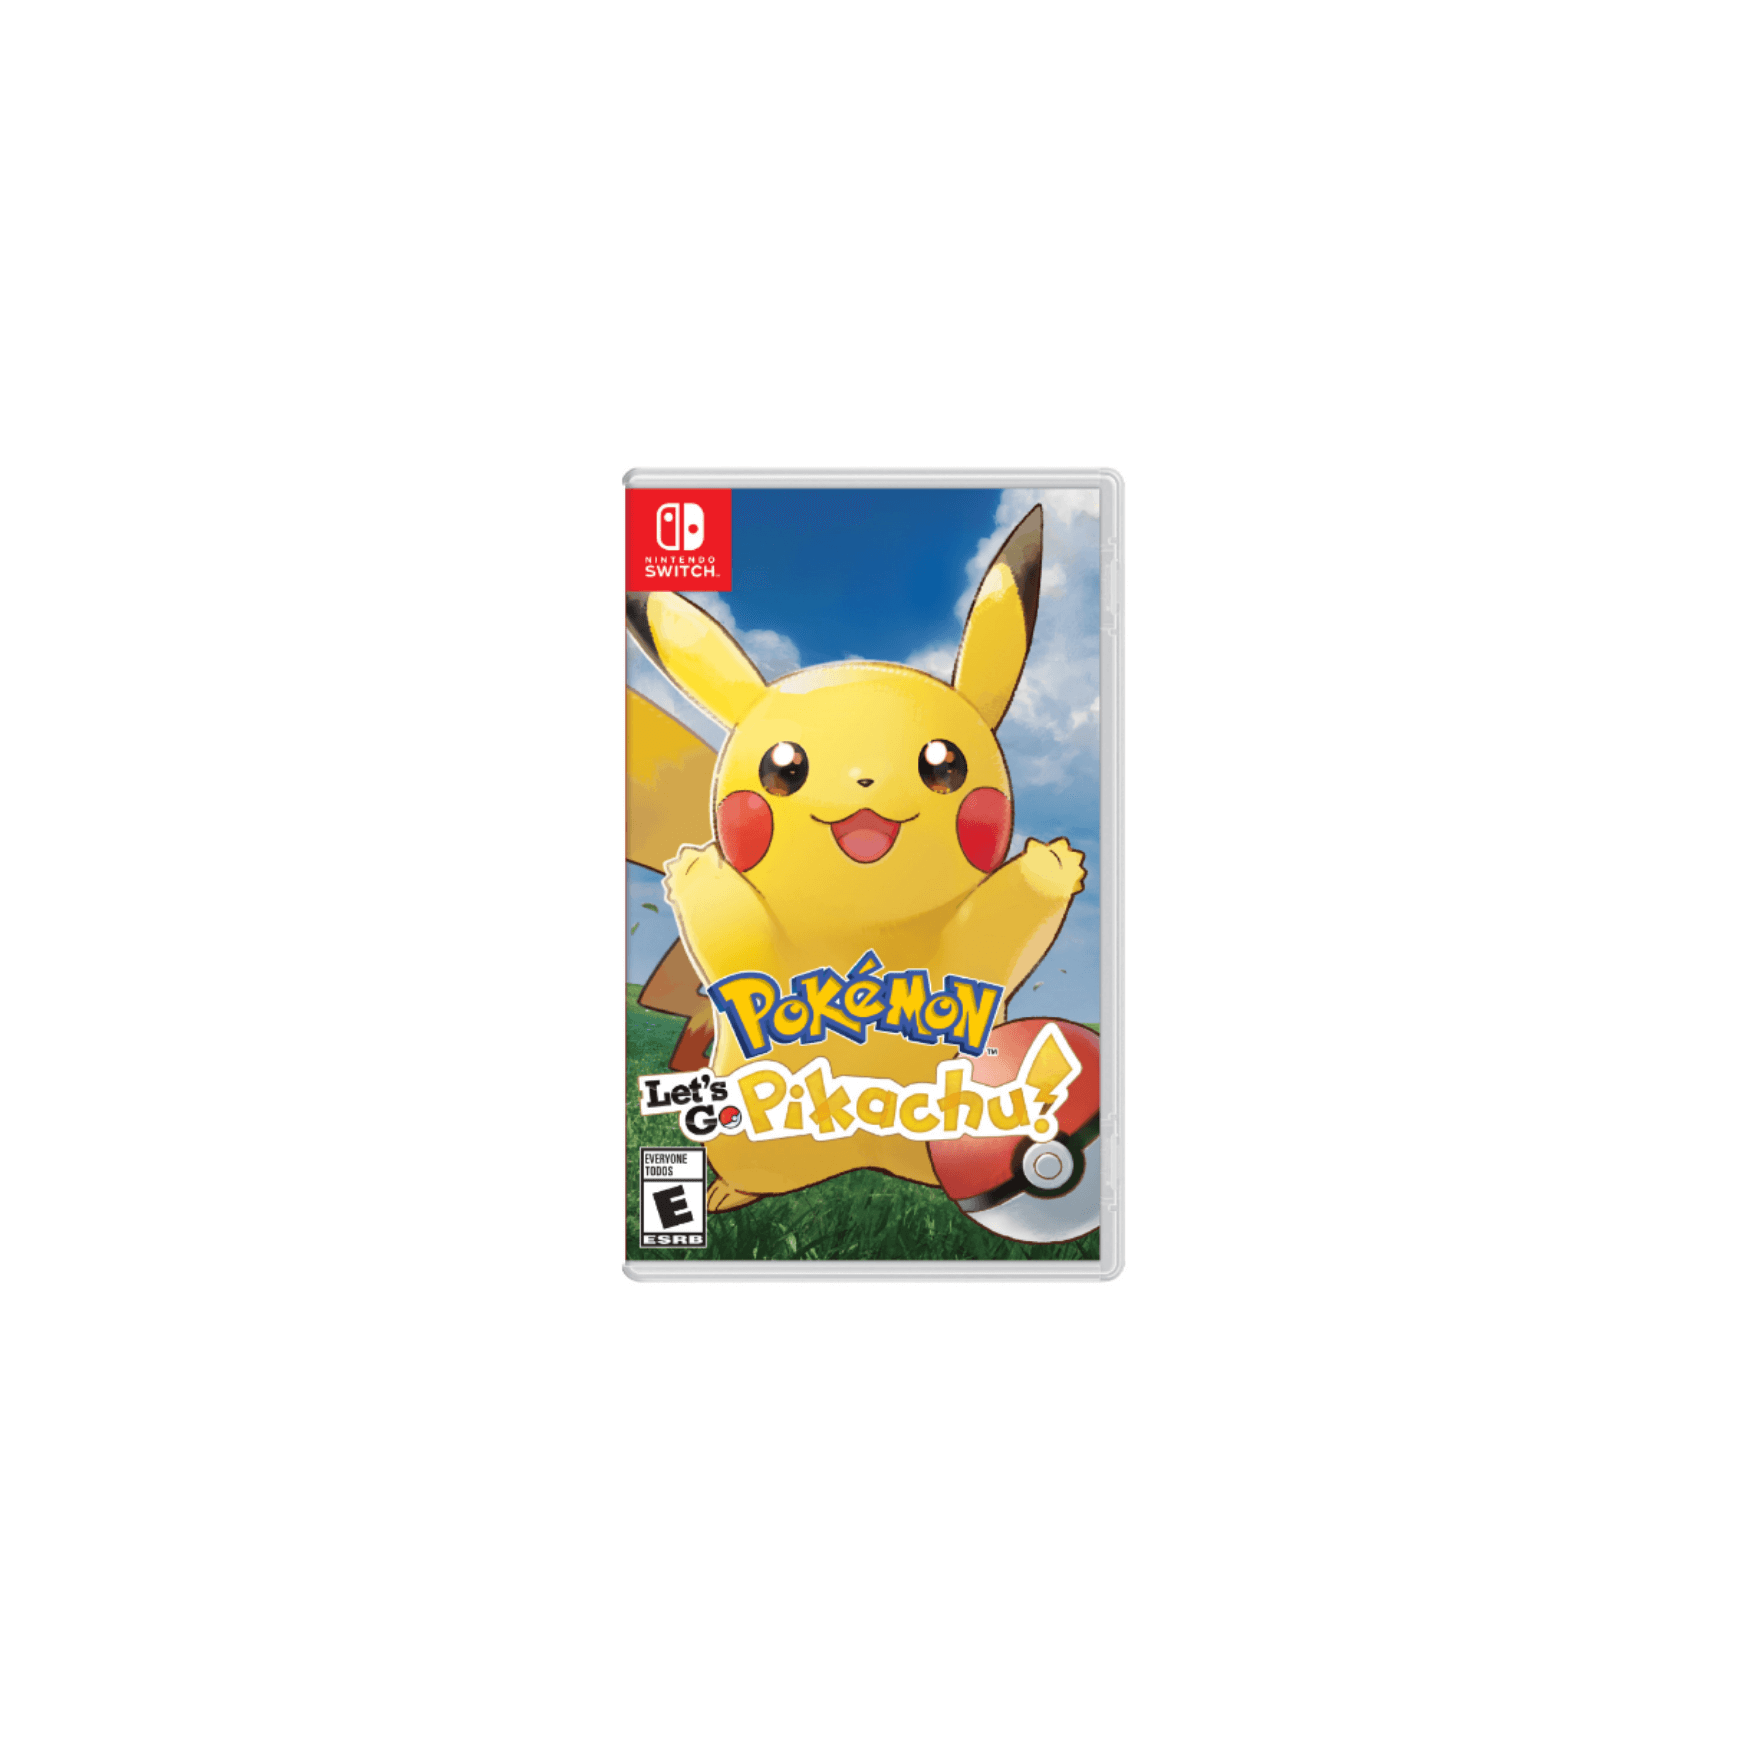 Nintendo Switch Game Pokémon: Let’s Go, Pikachu! - for Nintendo Switch